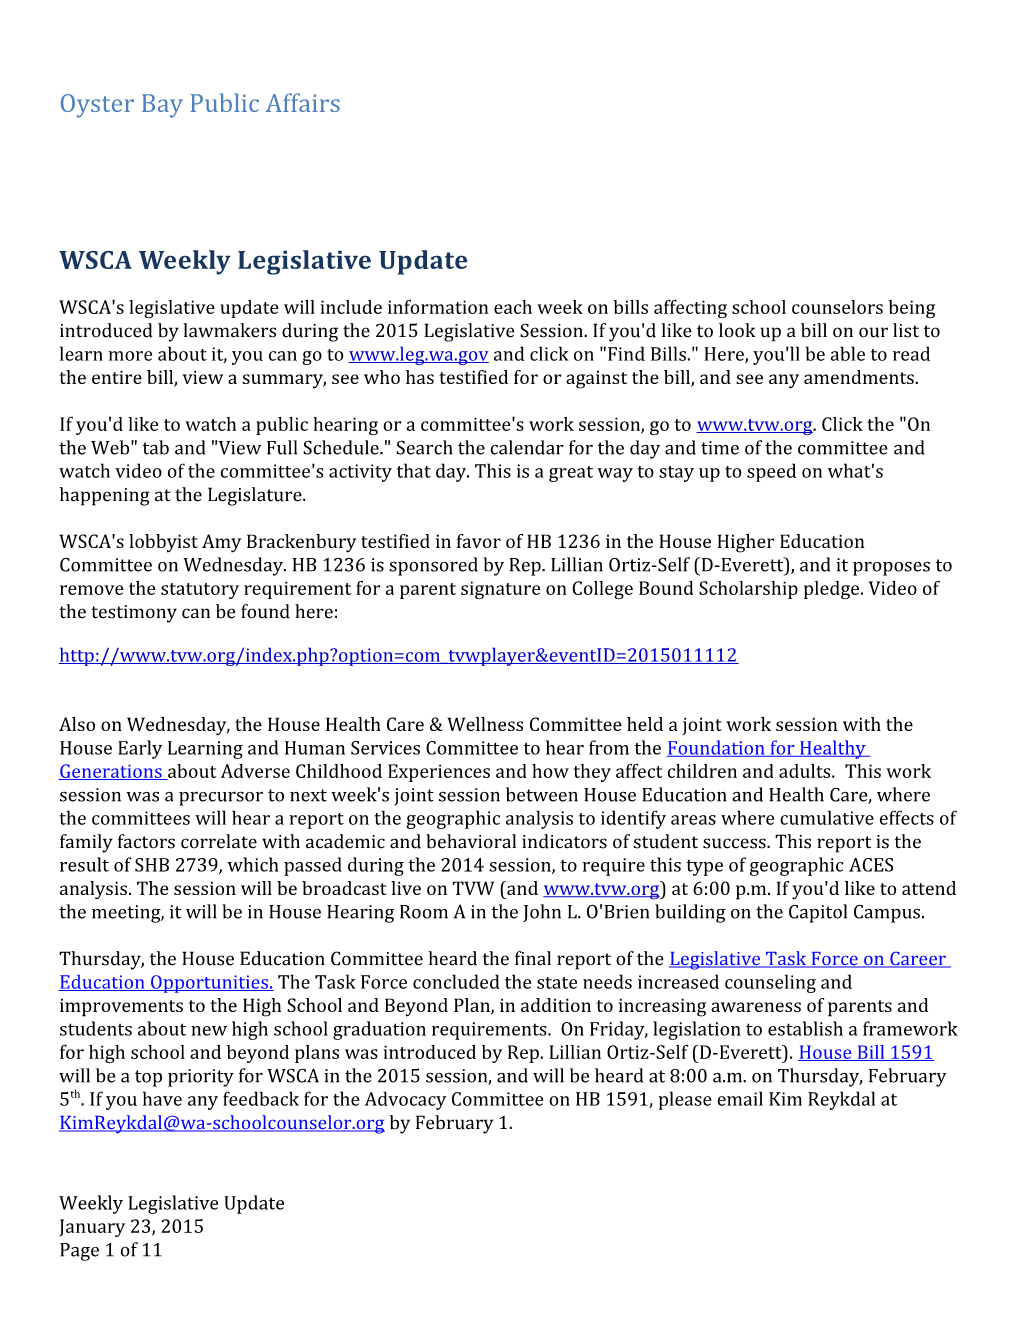 WSCA Weekly Legislative Update